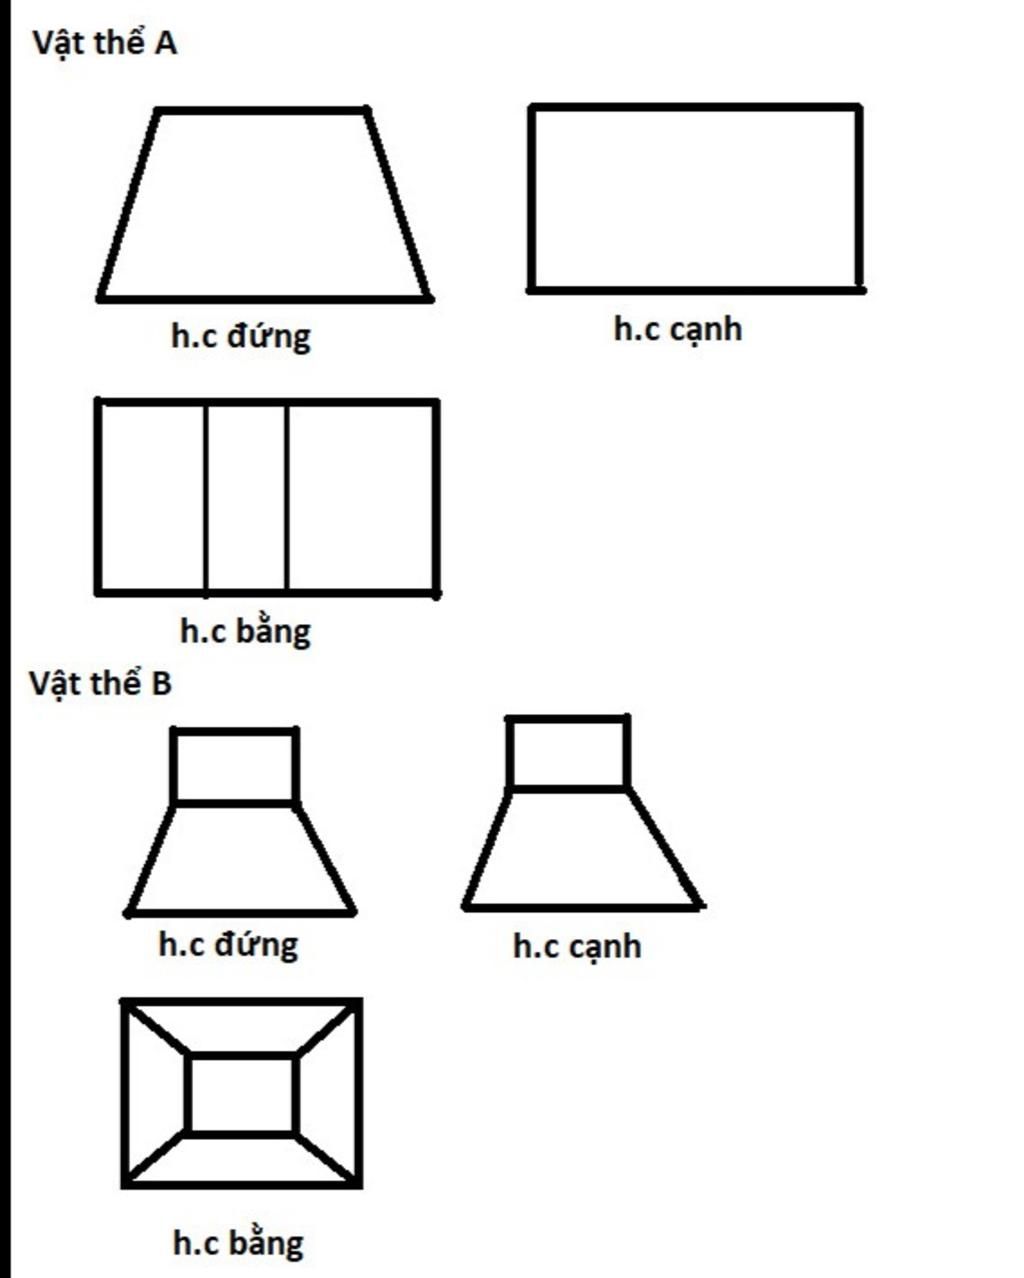 Nhận xét hình nào là hình chiếu đứng và hình chiếu cạnh của ren trục, em  hãy chọn đáp án nào sau đây là đúng: Hình chiếu đứng: a) và hình chiếu